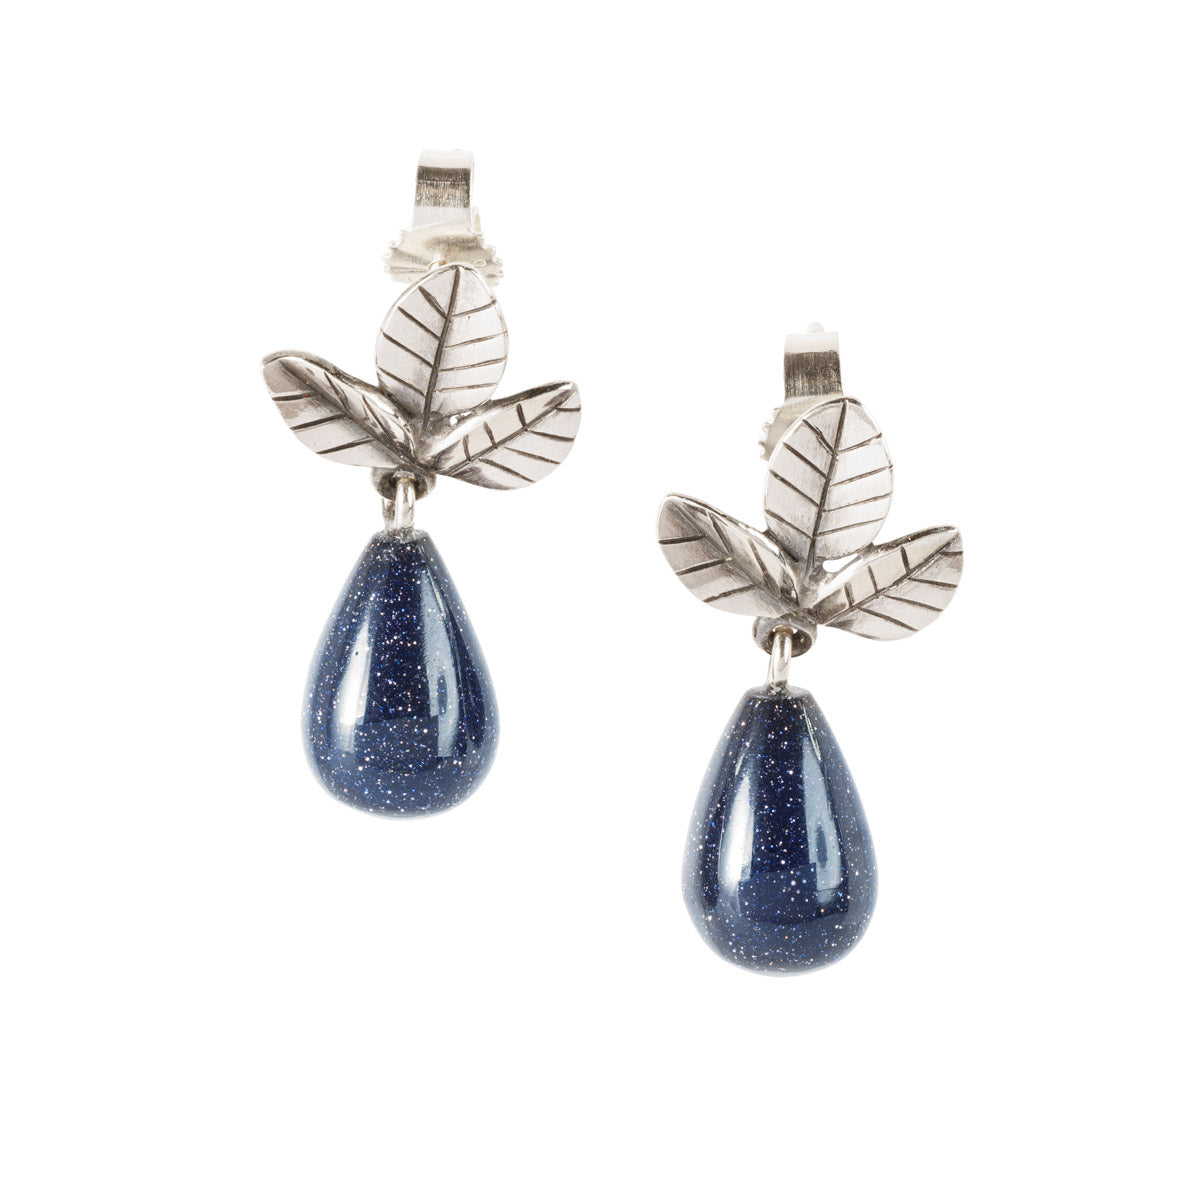 Orecchini Foglie della Forza Trollbeads | Orecchini con foglie in argento e pietre blu pendenti. Chiusura con la farfallina. | TAGEA-00128